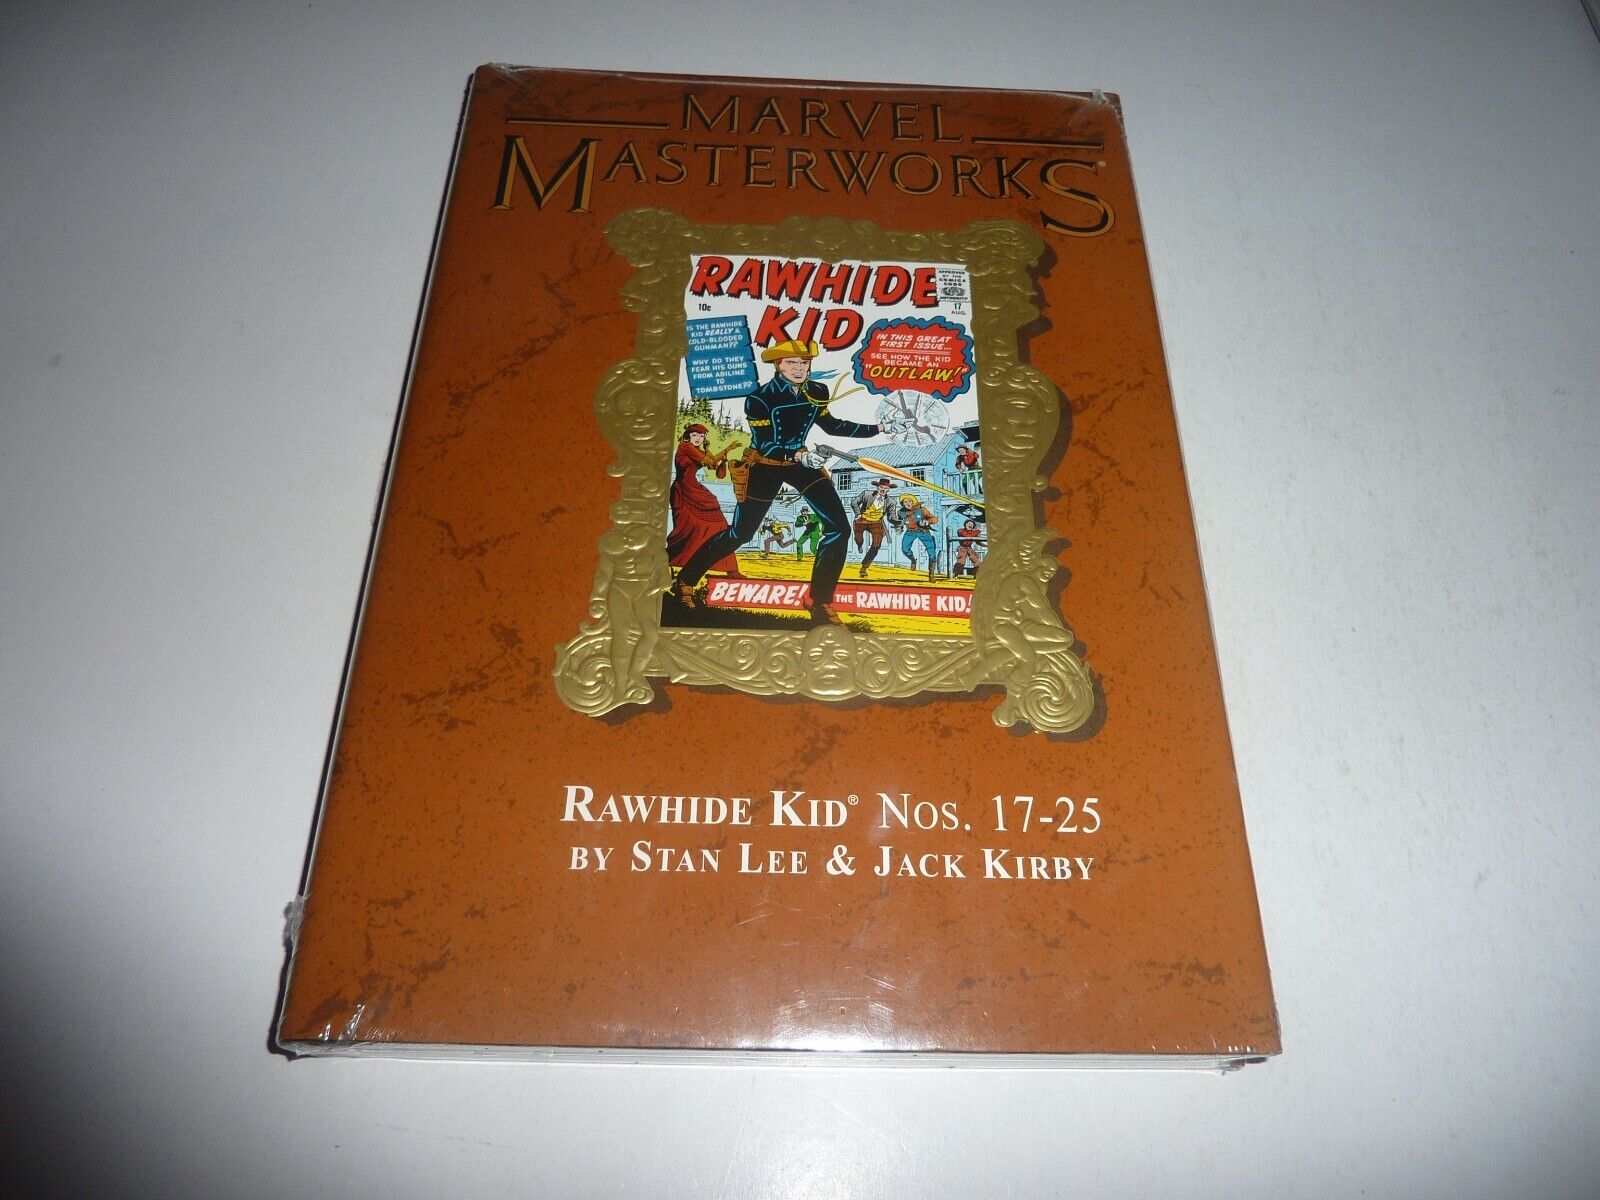 MARVEL MASTERWORKS Vol. 6 RAWHIDE KID LTD Variant Ed. HC NEW SEALED Lee Kirby